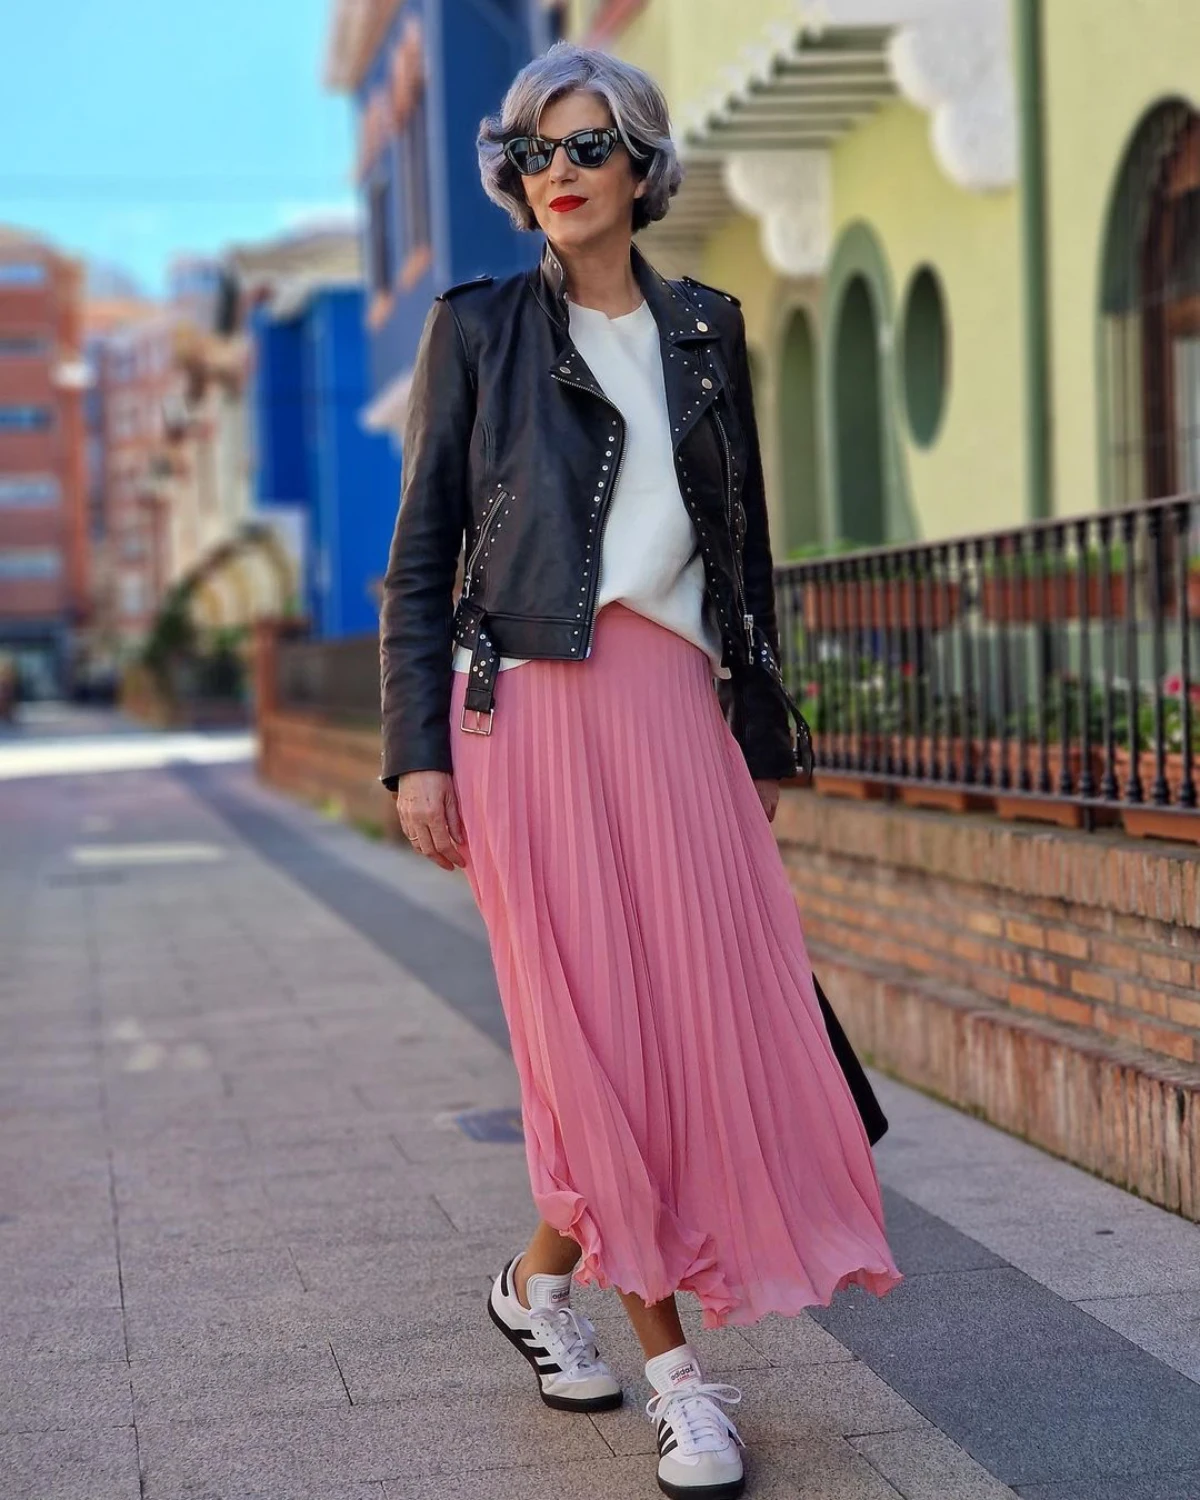 falda rosa zapatillas adidas top blanco chaqueta cuero mujer street